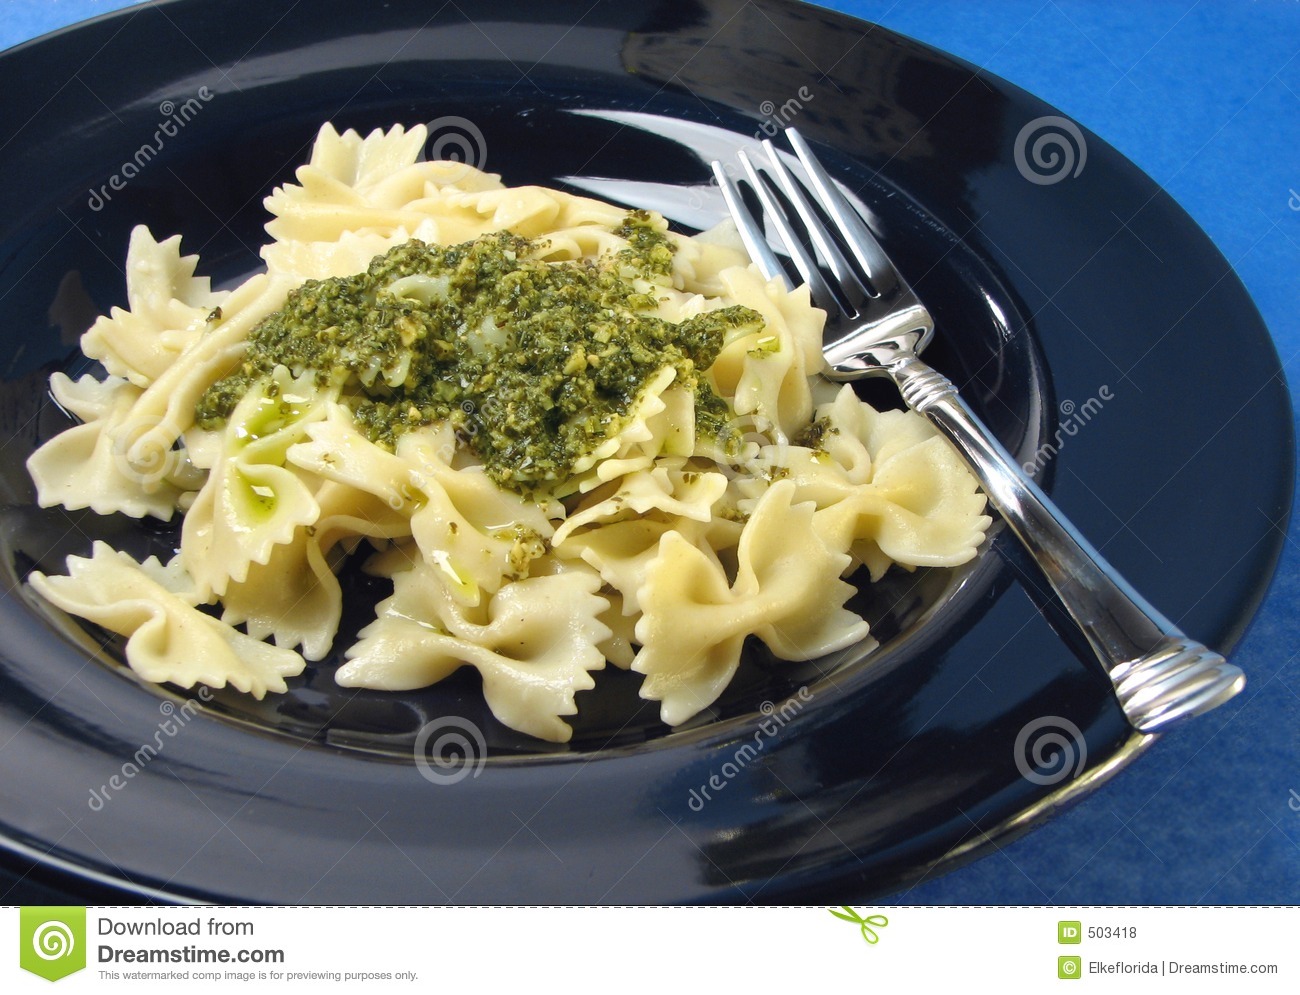 Pesto Pasta Dinner Royalty Free Stock Photos   Image  503418